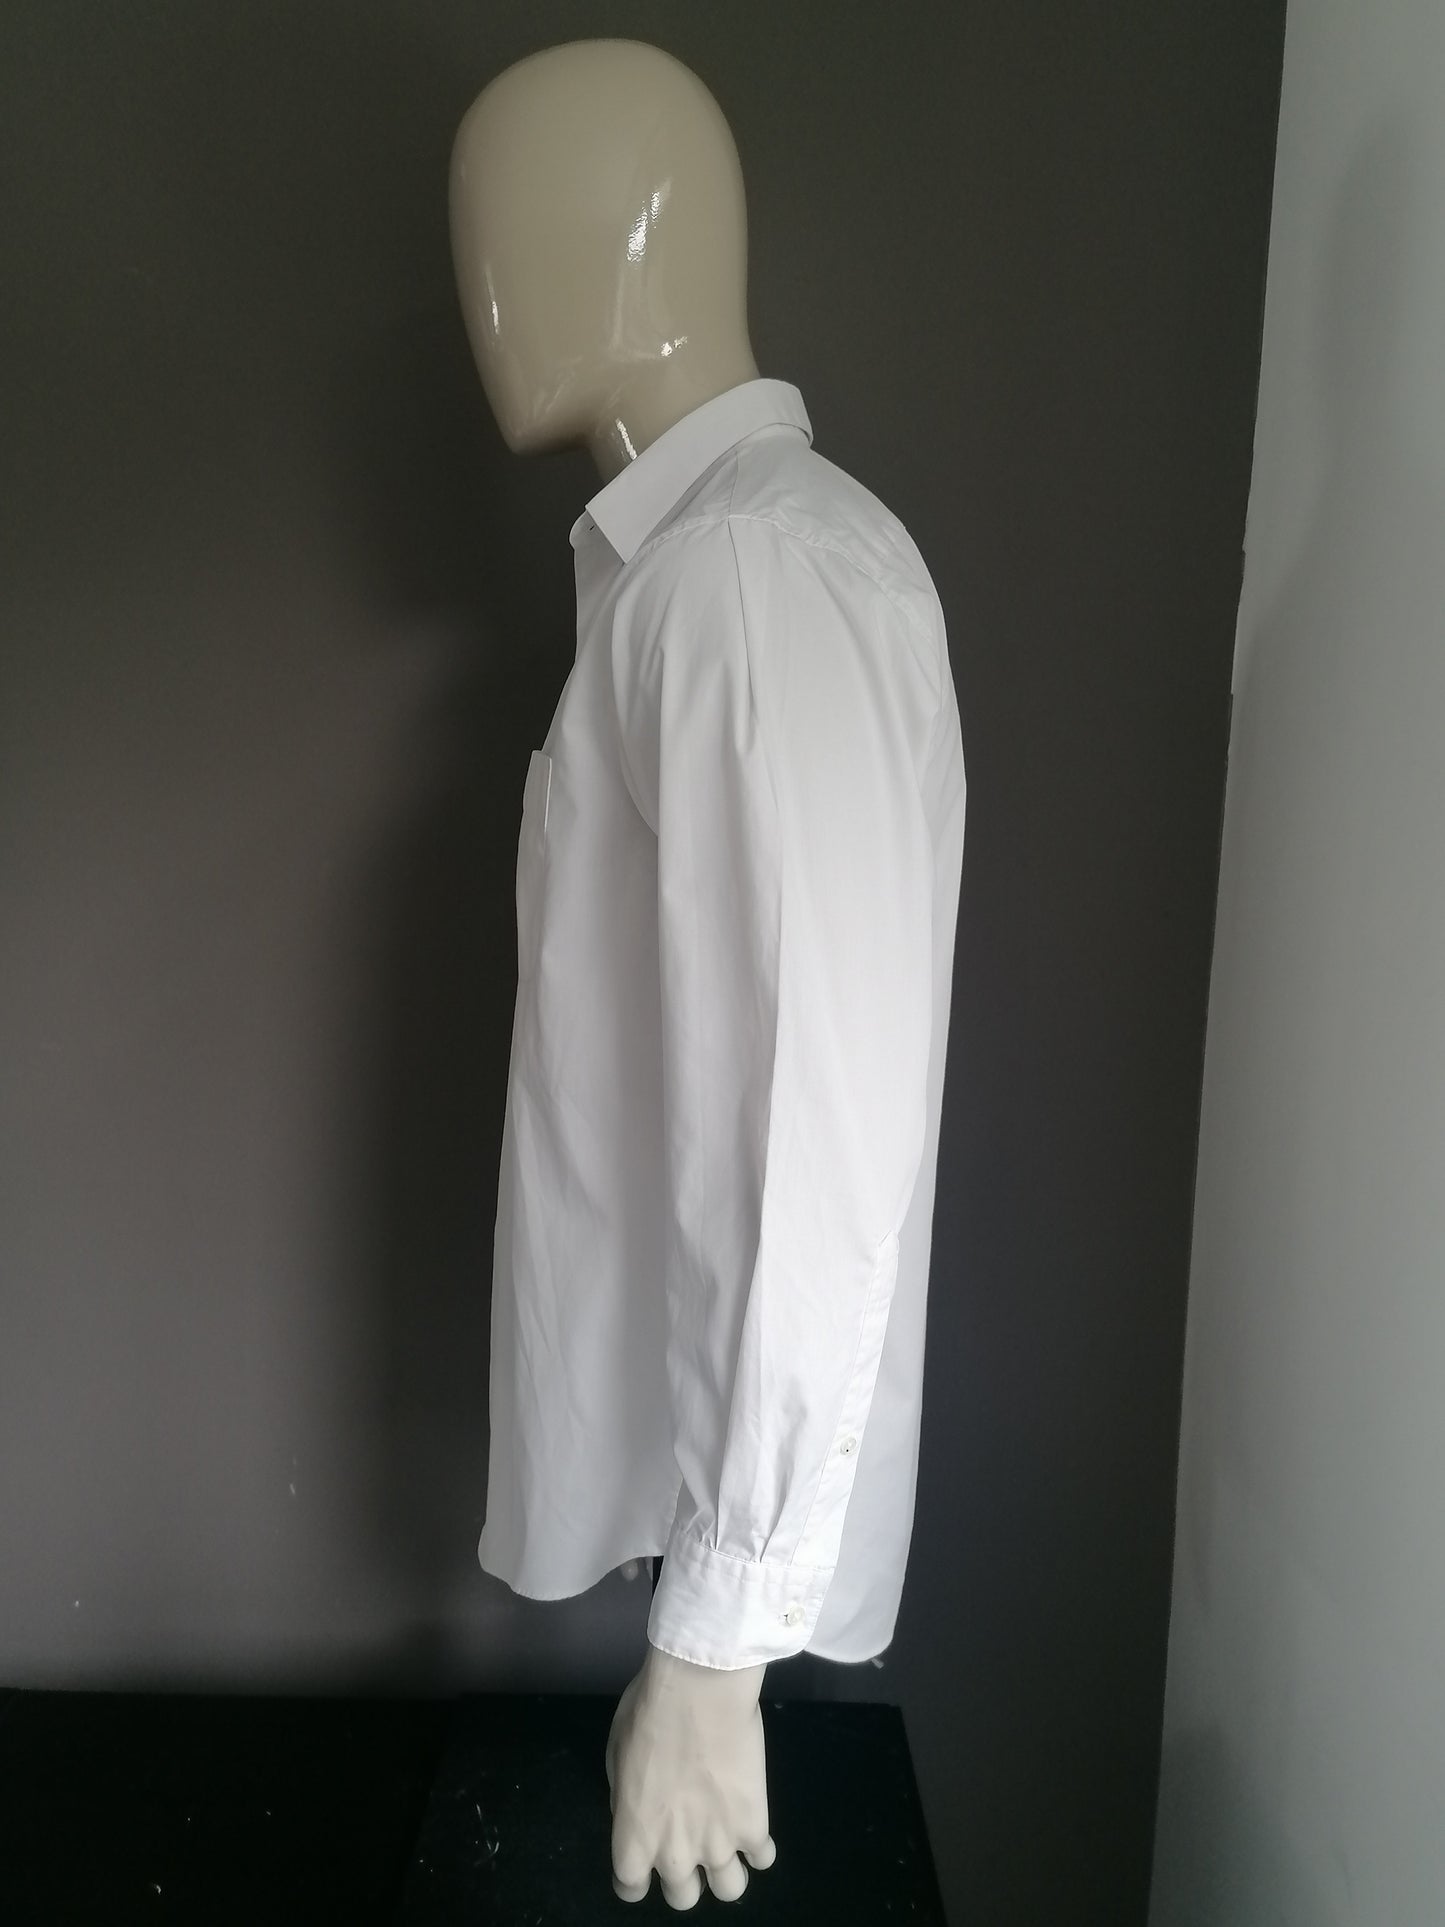 Perry Ellis overhemd. Wit gekleurd. Maat 42 / L. 65% Katoen & 35% Polyester.